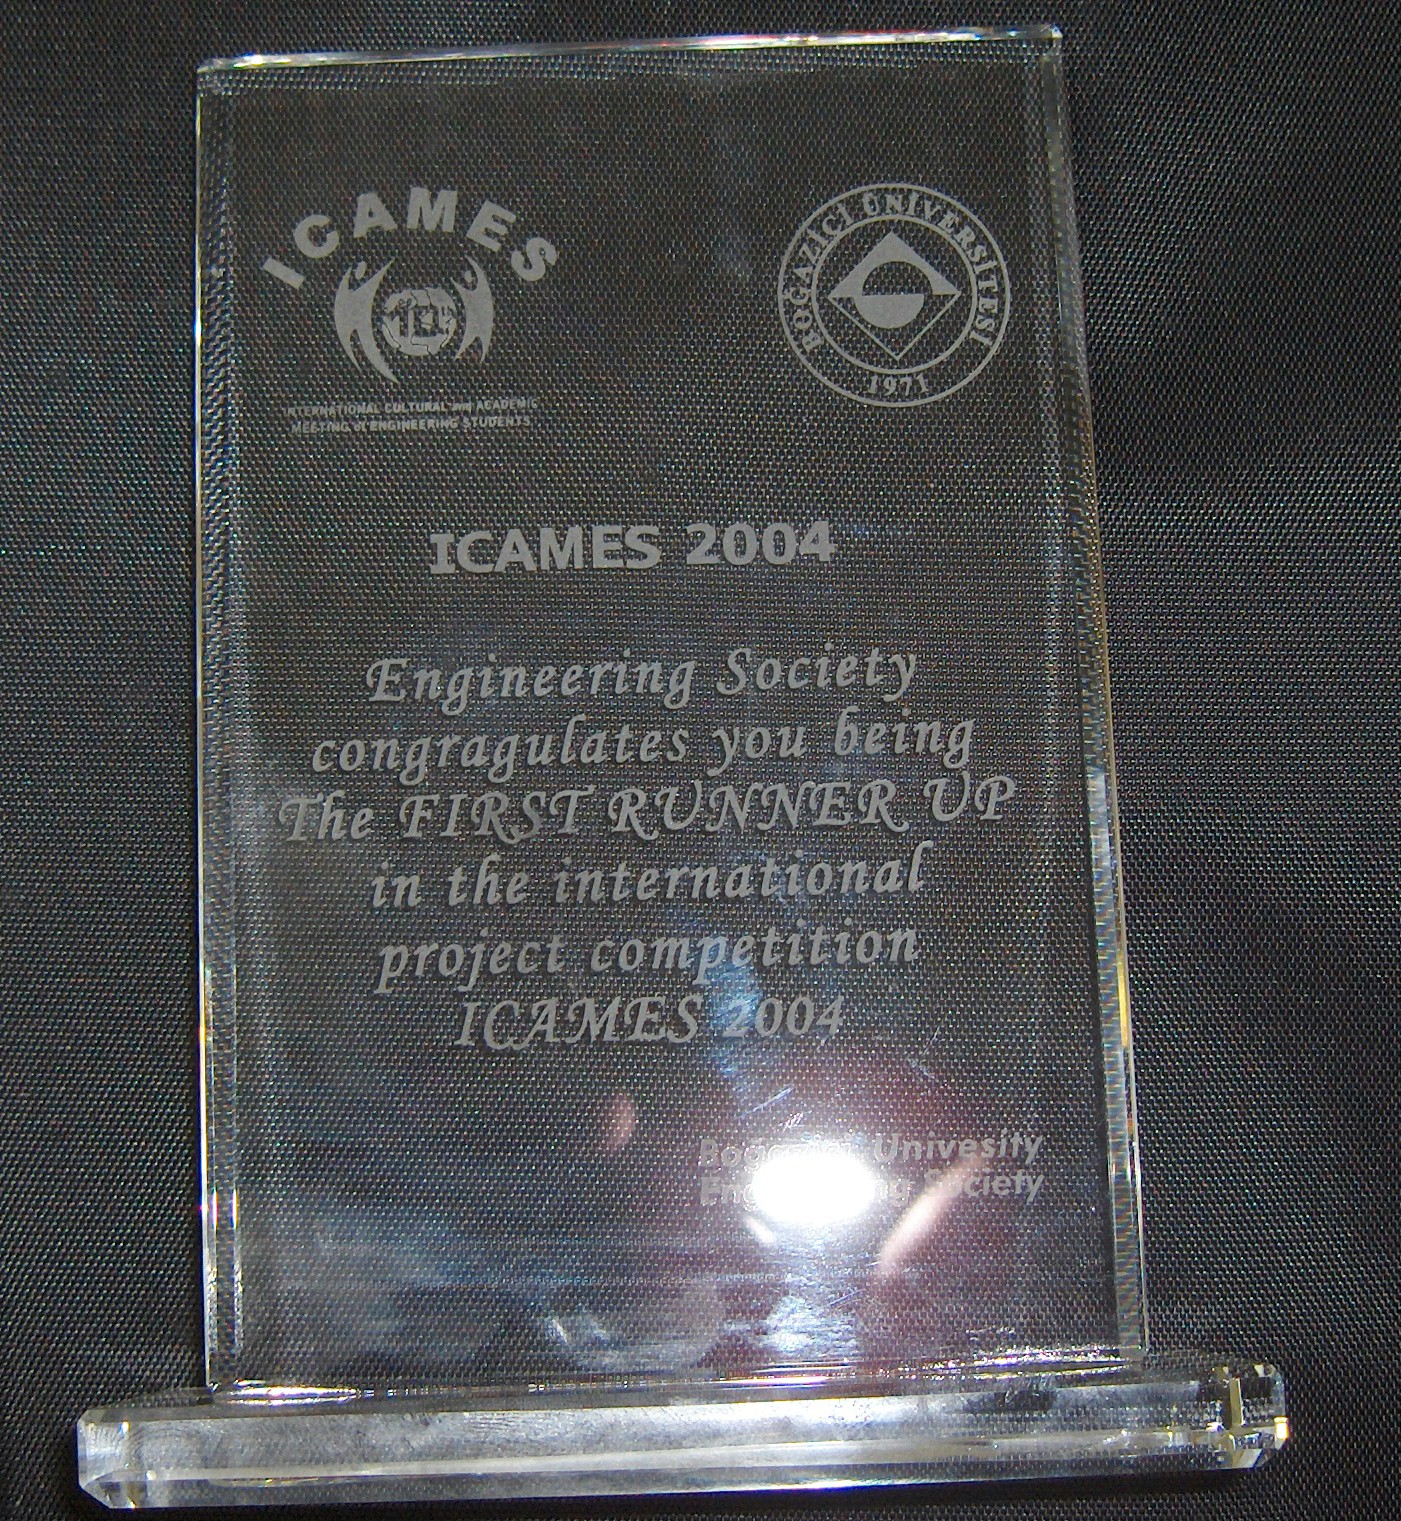 ICAMES 2004 Awards